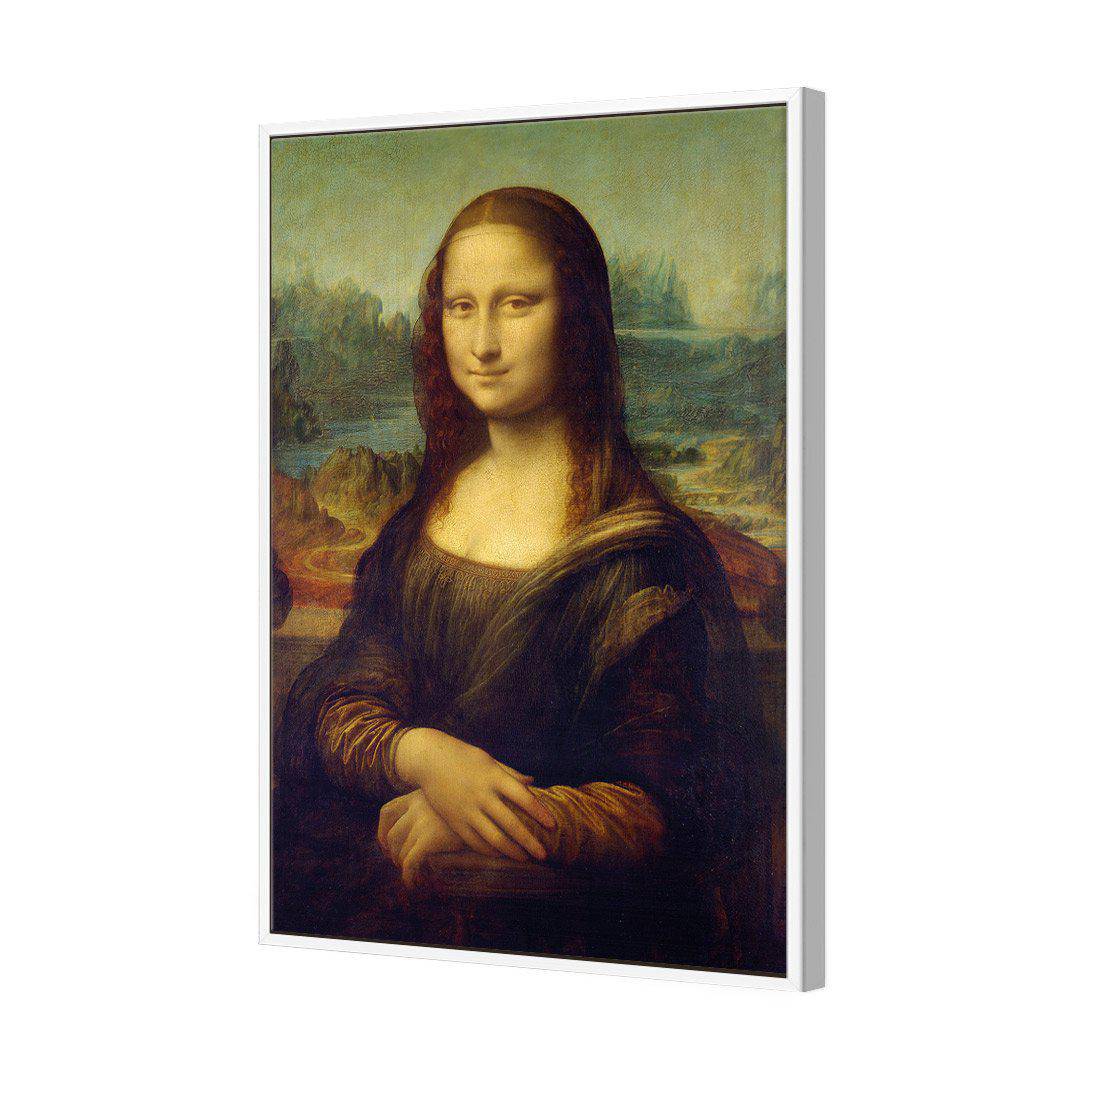 Mona Lisa - Da Vinci Canvas Art-Canvas-Wall Art Designs-45x30cm-Canvas - White Frame-Wall Art Designs